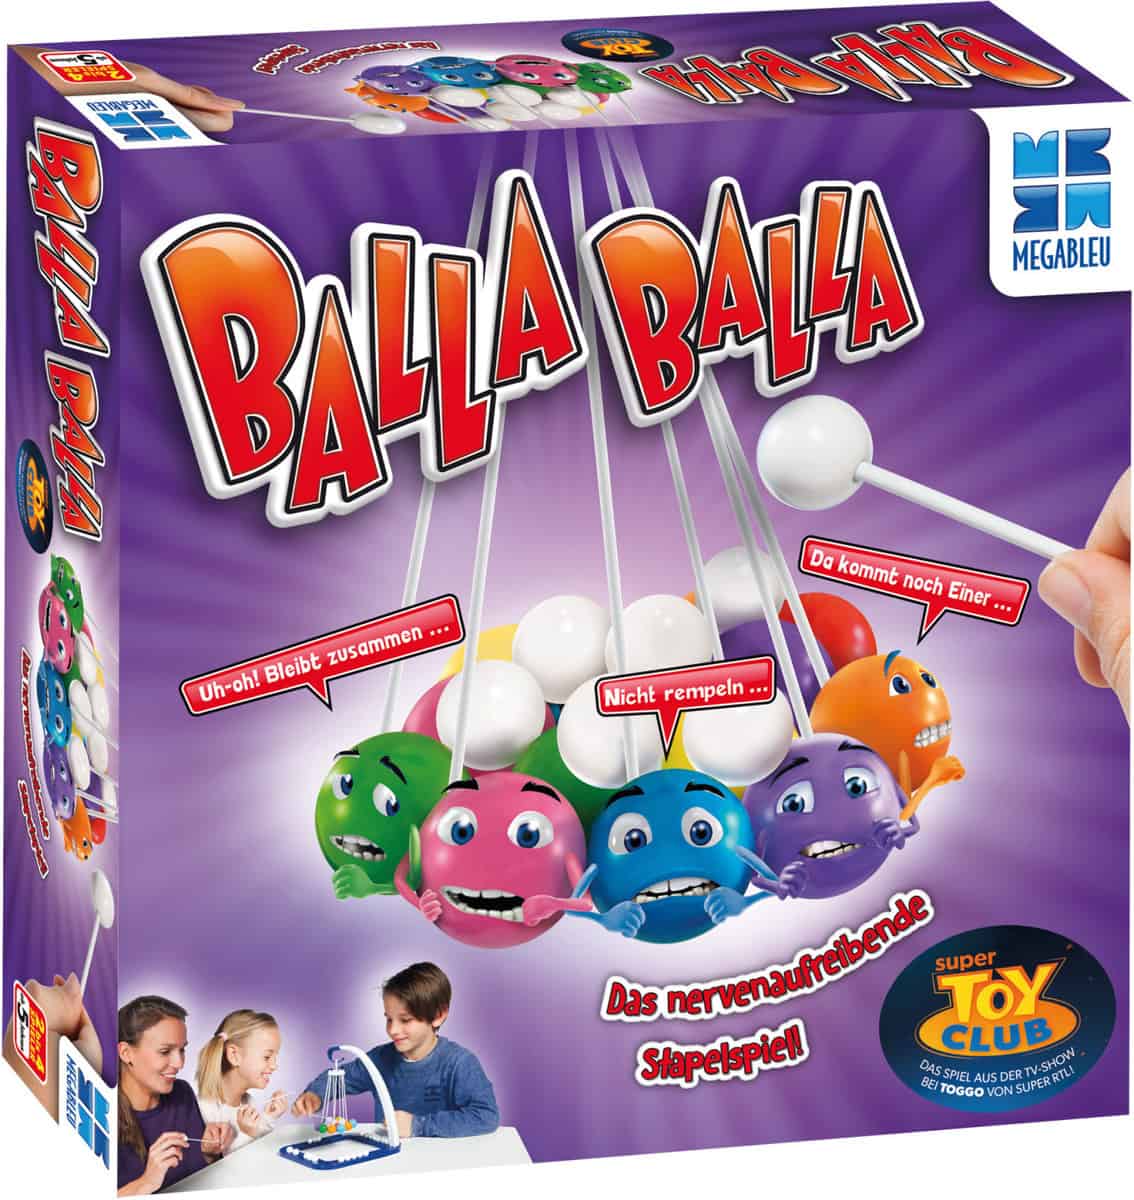 Megableu Balla Balla - Geschicklichkeitsspiel - für 16,94 € inkl. Versand statt 26,98 €